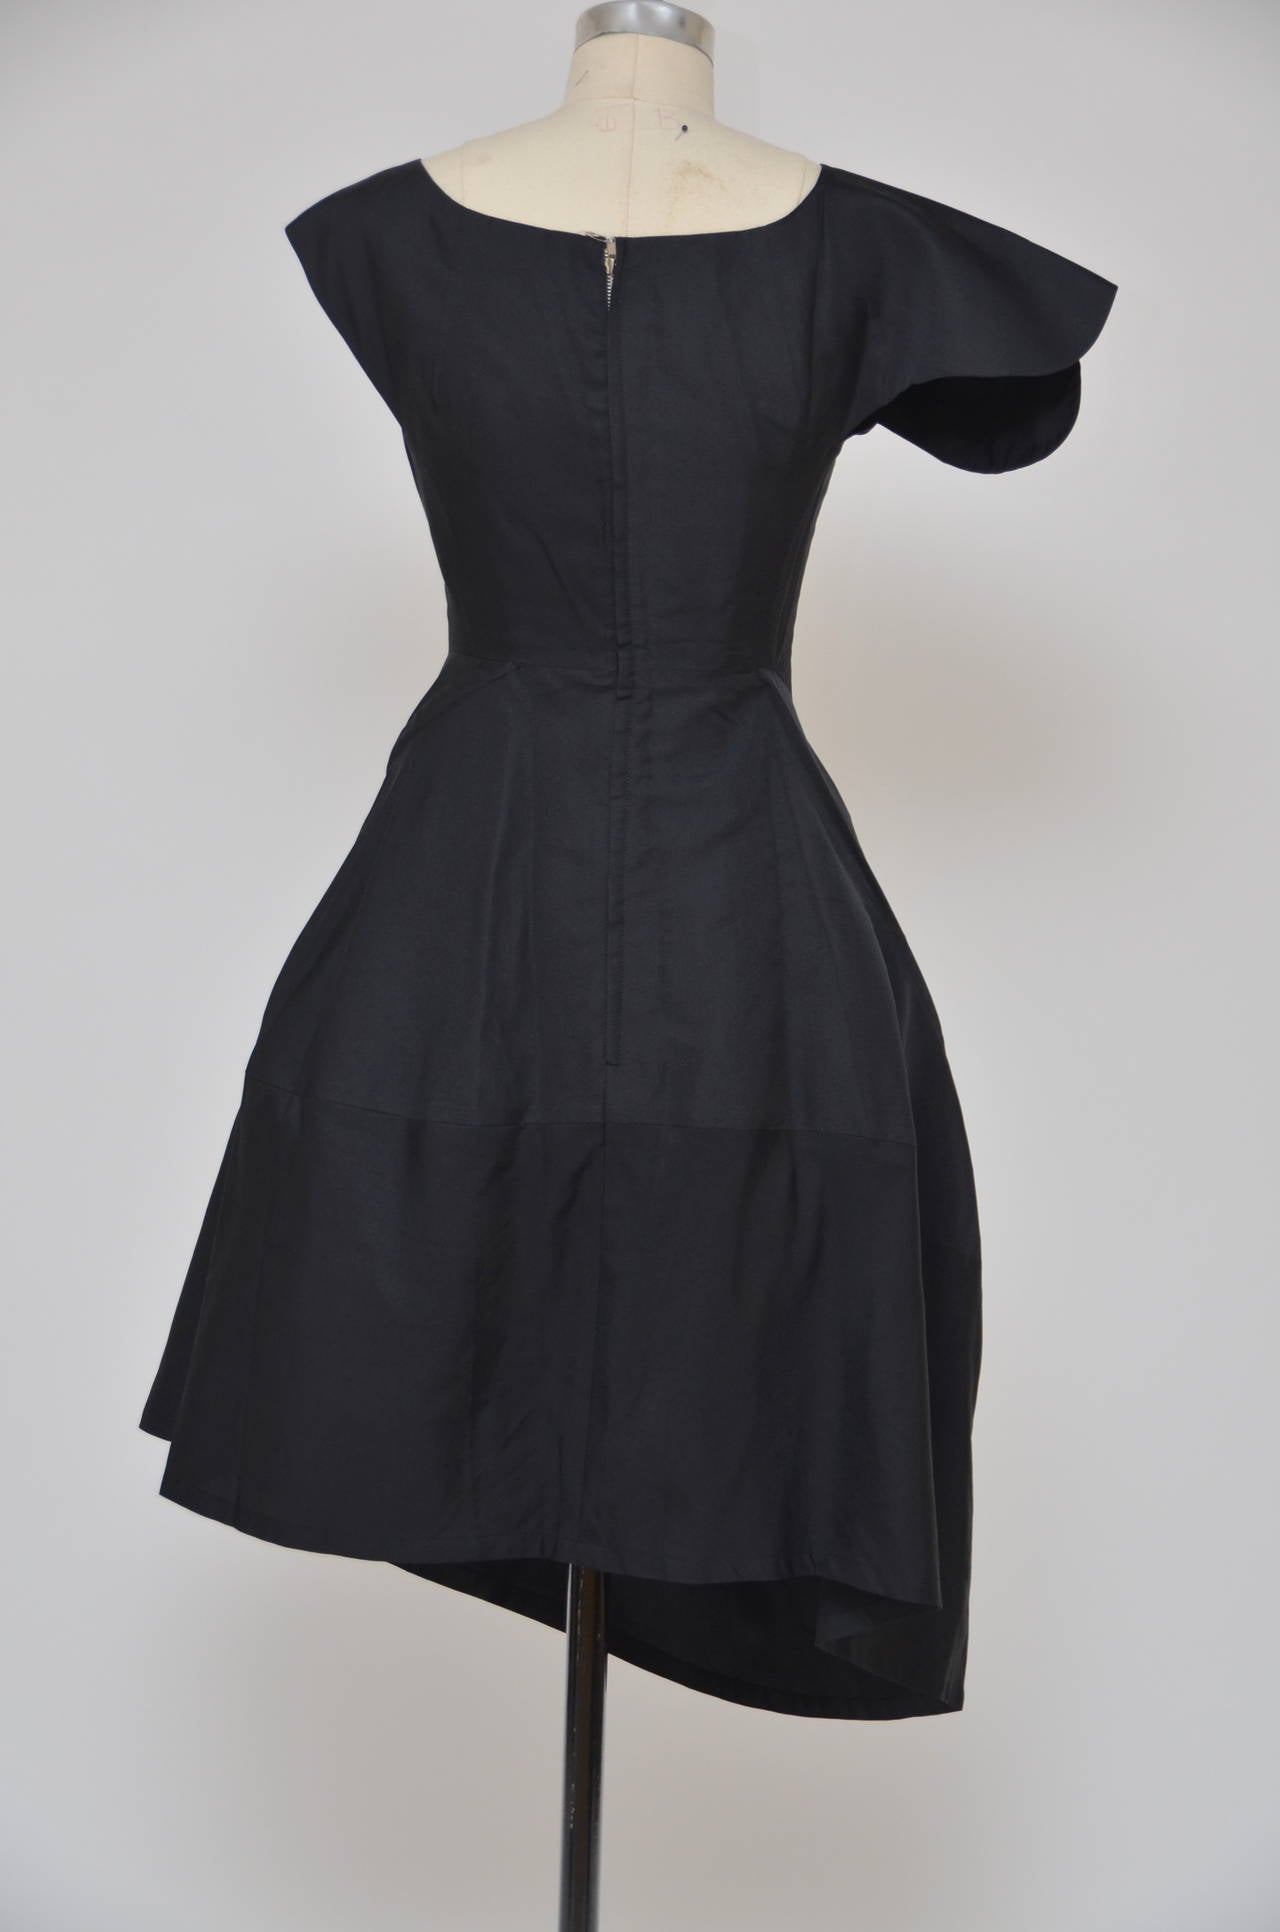 Iconic  YOHJI YAMAMOTO  Black  Silk  Swirl Dress New 2